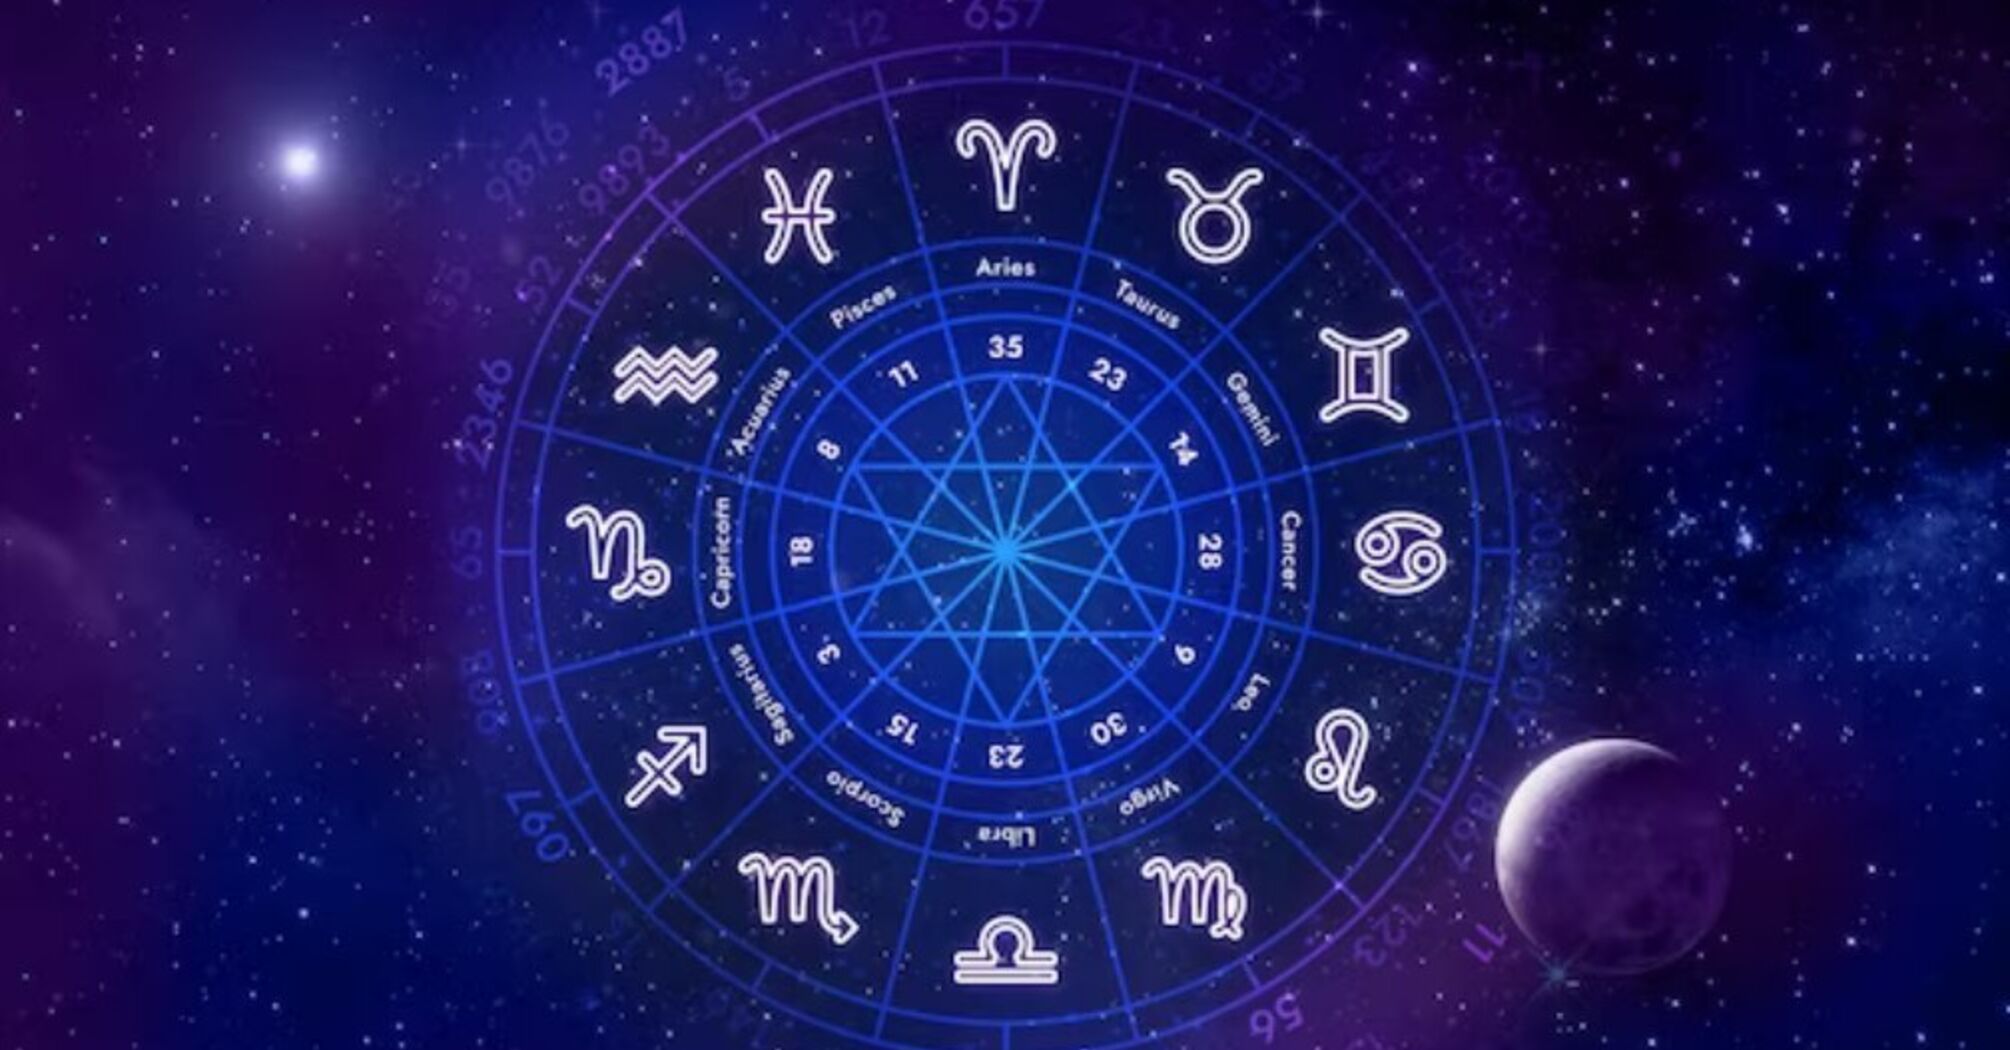 Представителям пяти знаков зодиака больше всего повезет на этой неделе